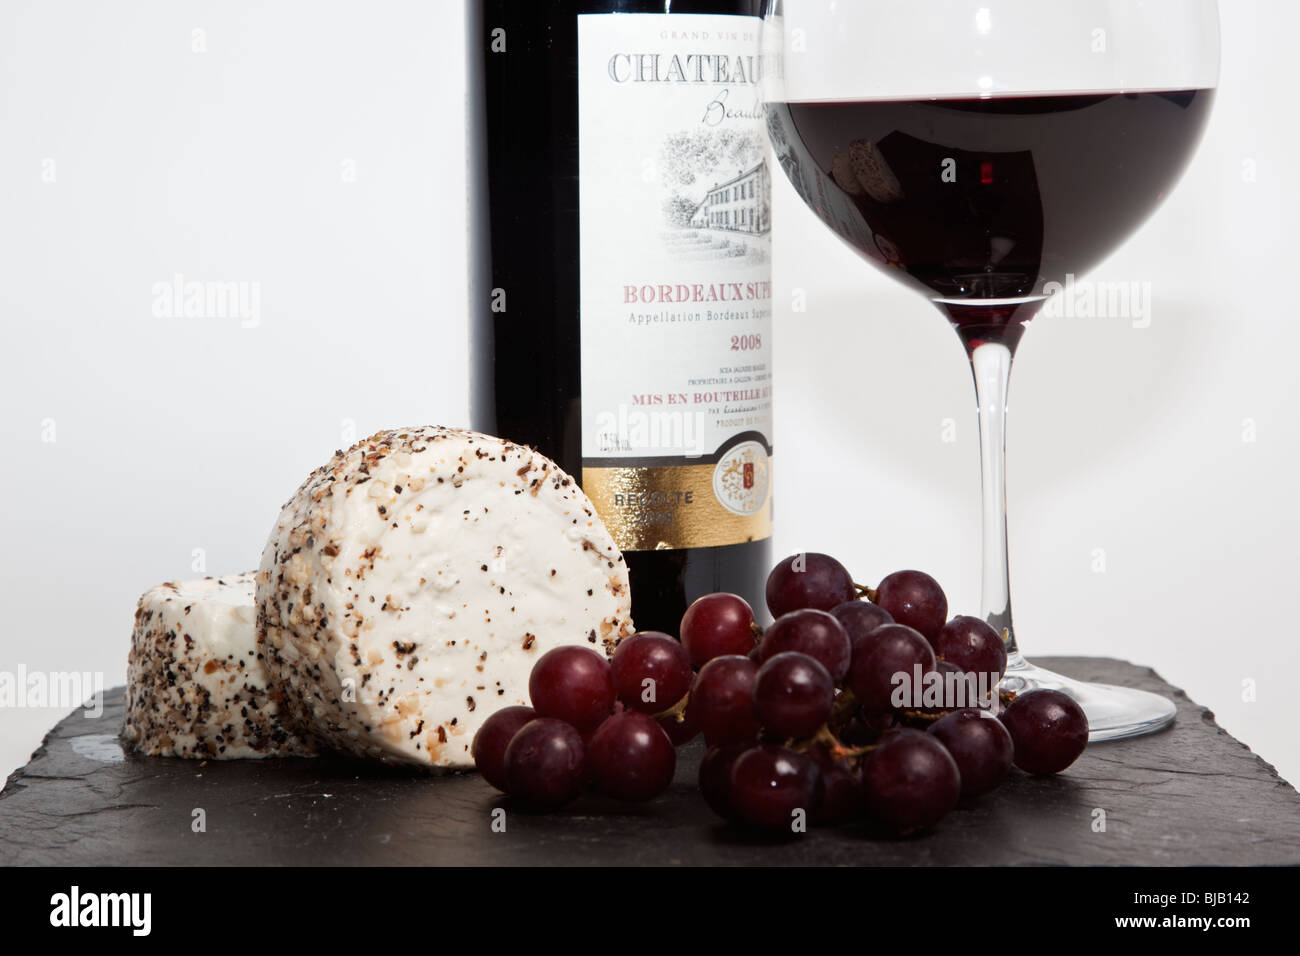 Still Life de vin rouge, un morceau de fromage à l'ail et le poivre, des raisins et une bouteille de vin rouge avec un arrière-plan uni, blanc Banque D'Images